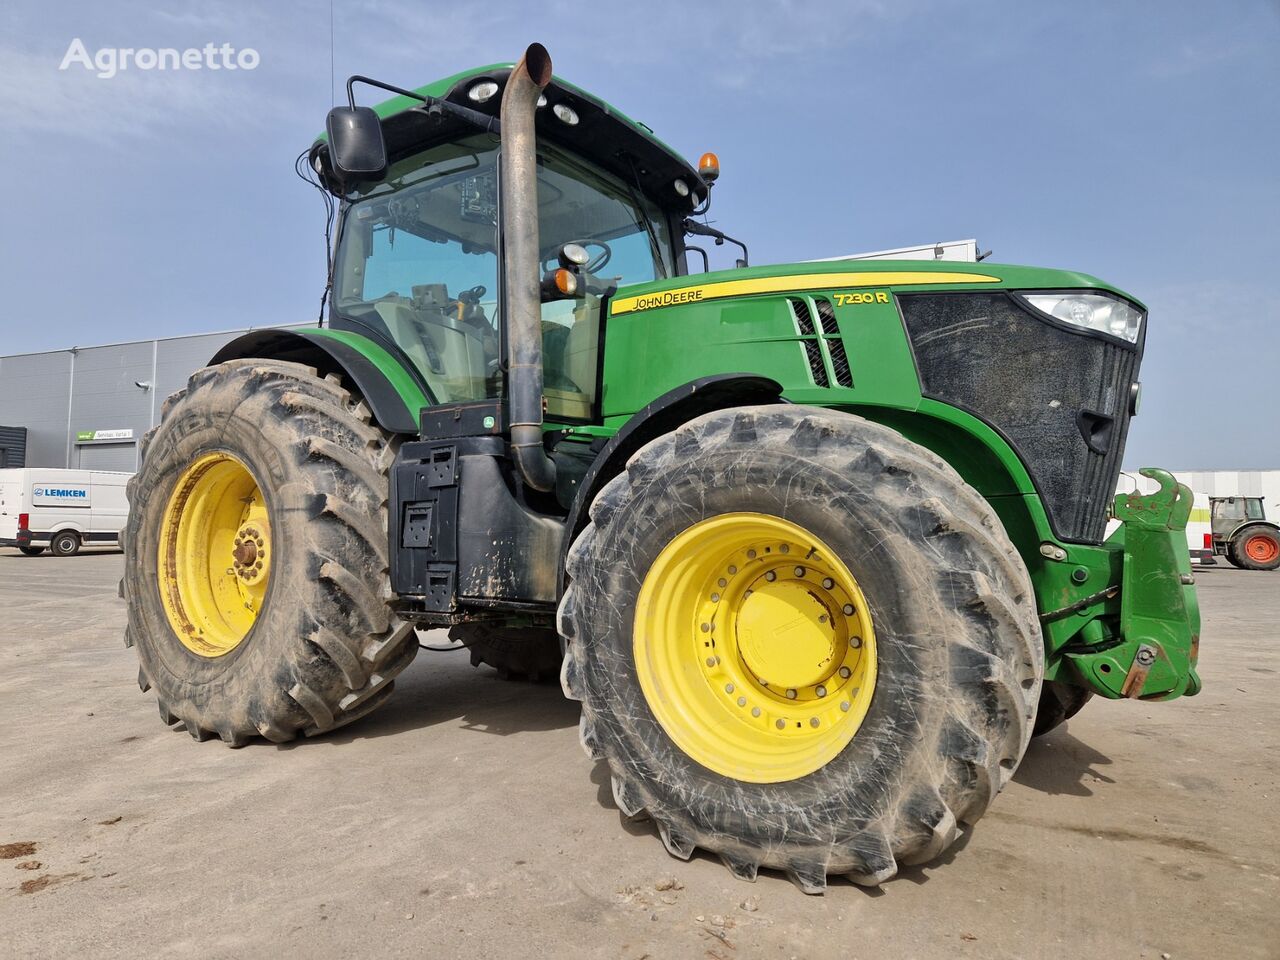 John Deere 7230 R wheel tractor